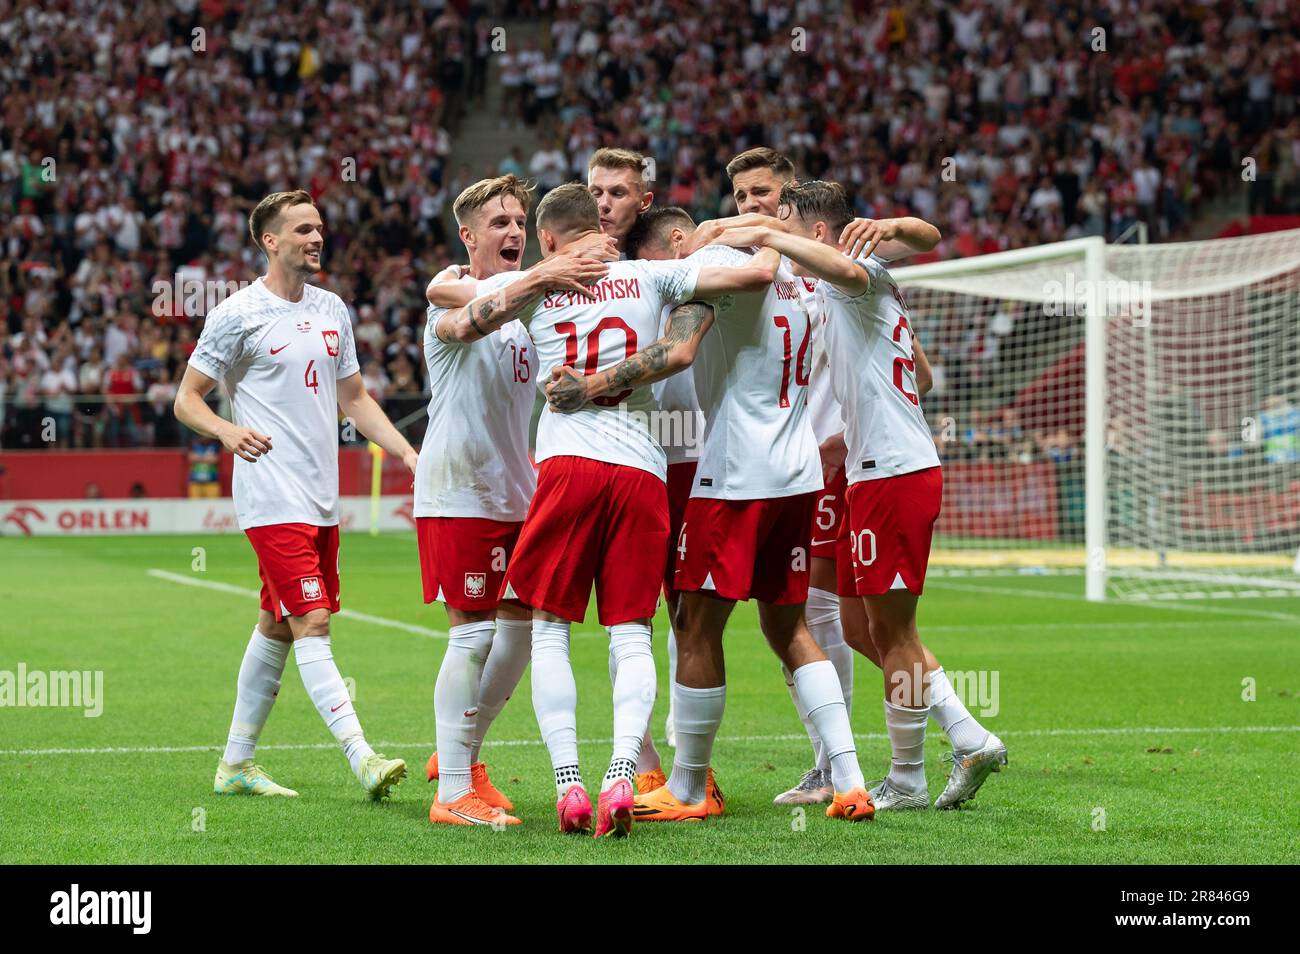 VARSOVIE, POLOGNE - 16 JUIN 2023: Match de football amical Pologne contre Allemagne 1:0. L'équipe de Pologne se réjouisse après avoir marqué son objectif. Banque D'Images